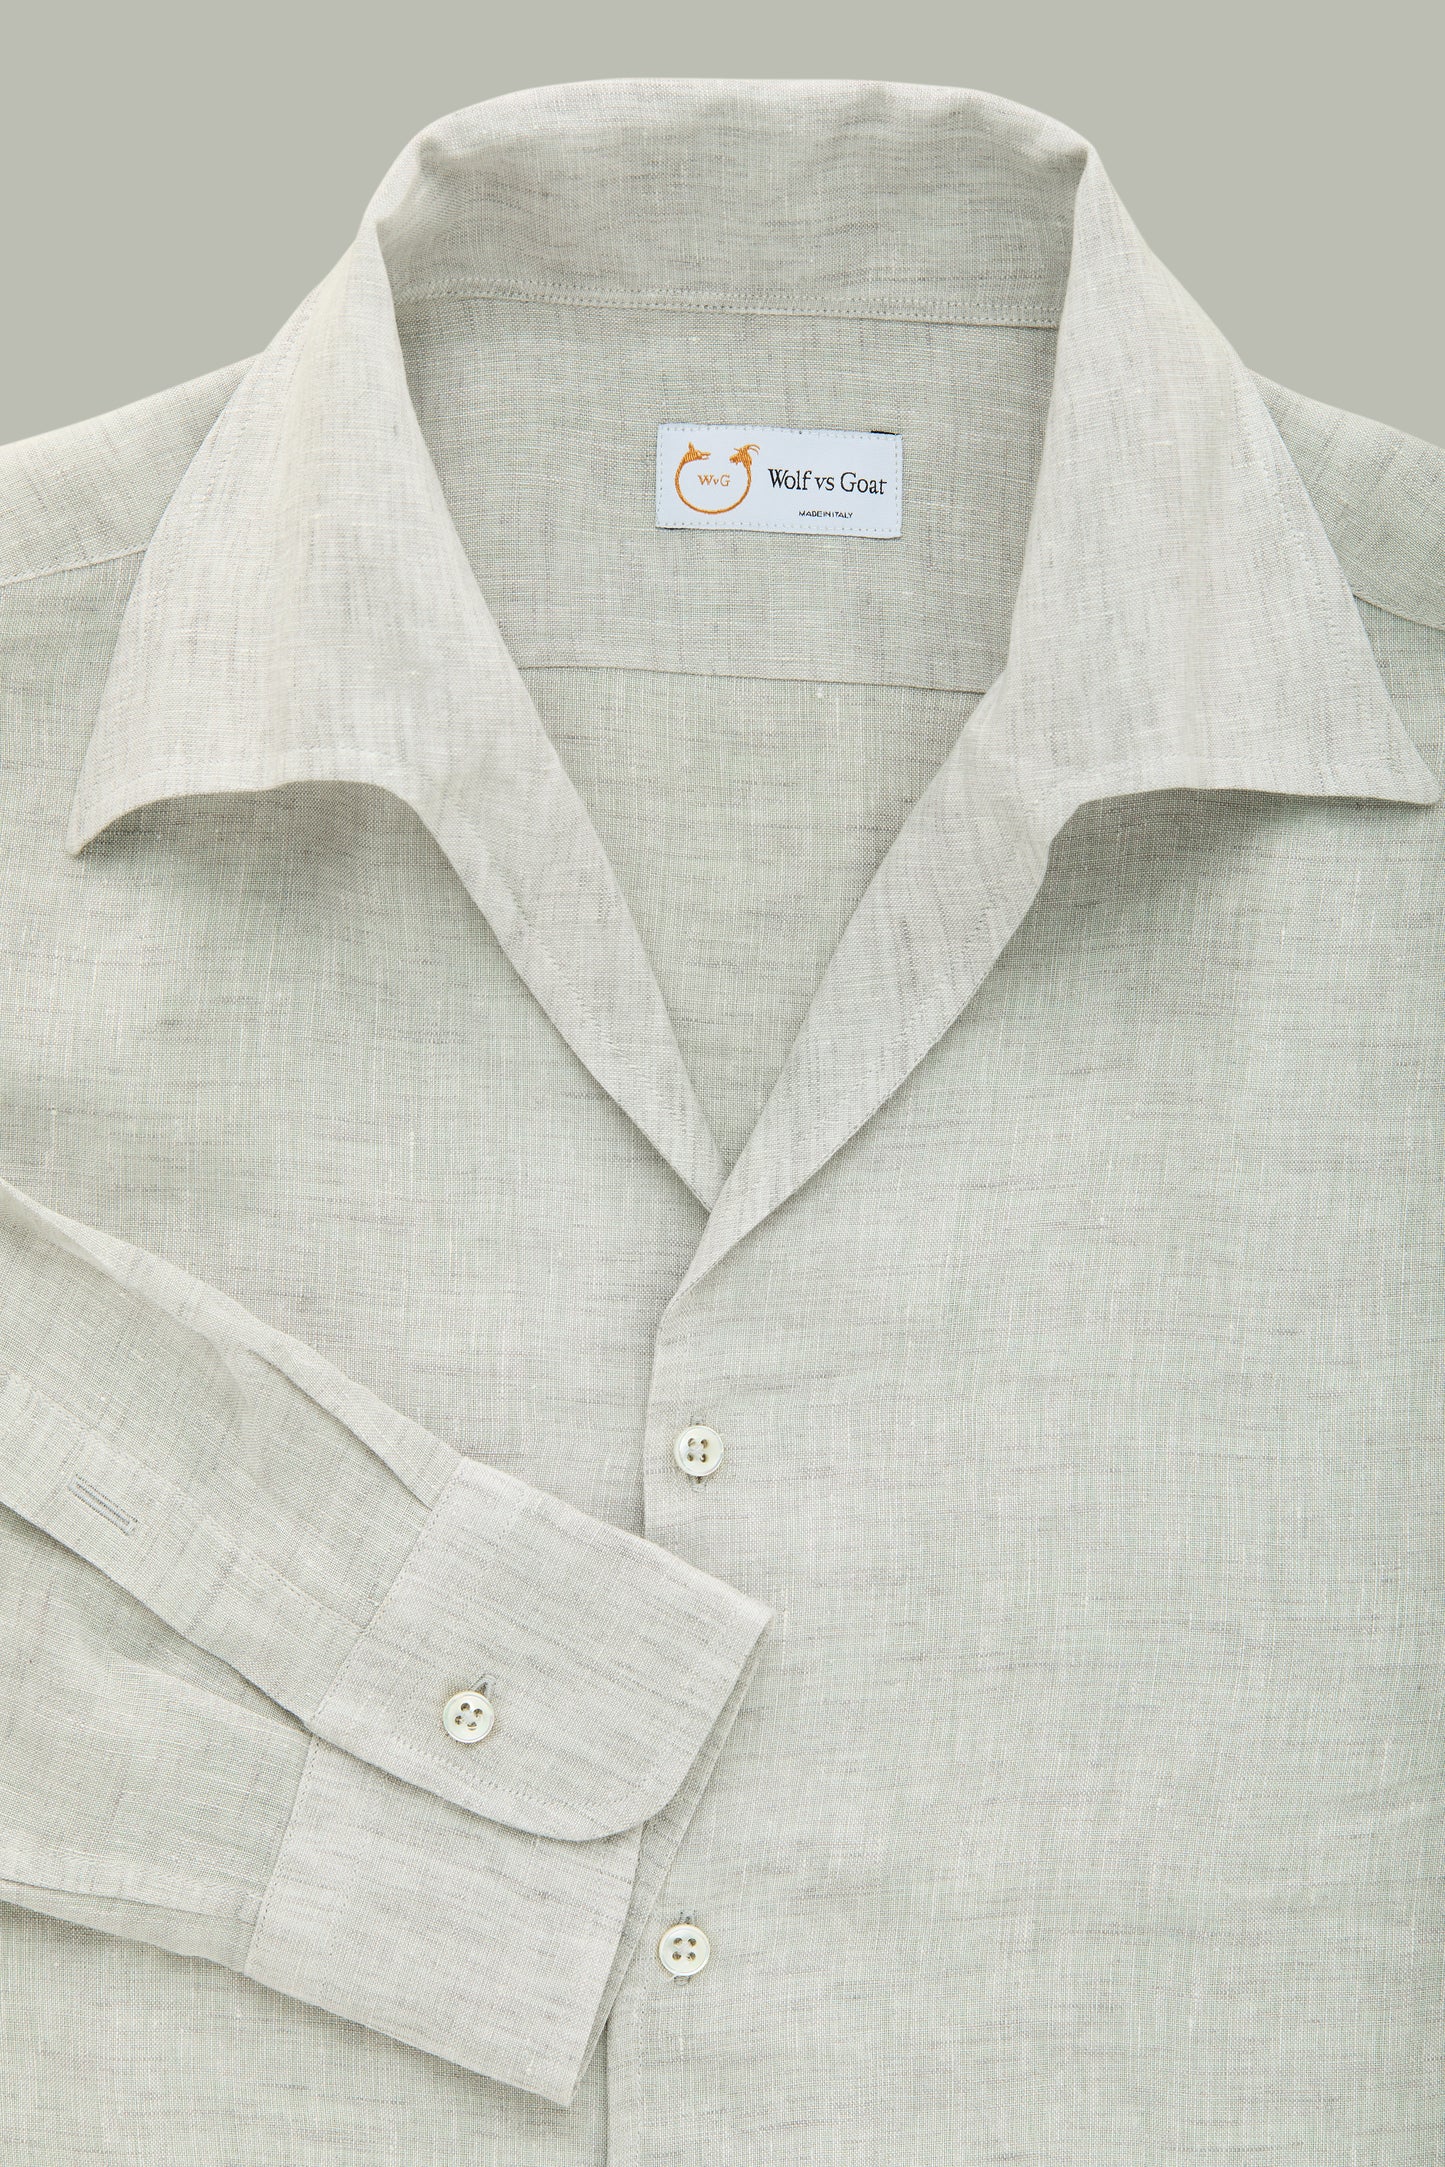 Capri Long Sleeve Linen Shirt White